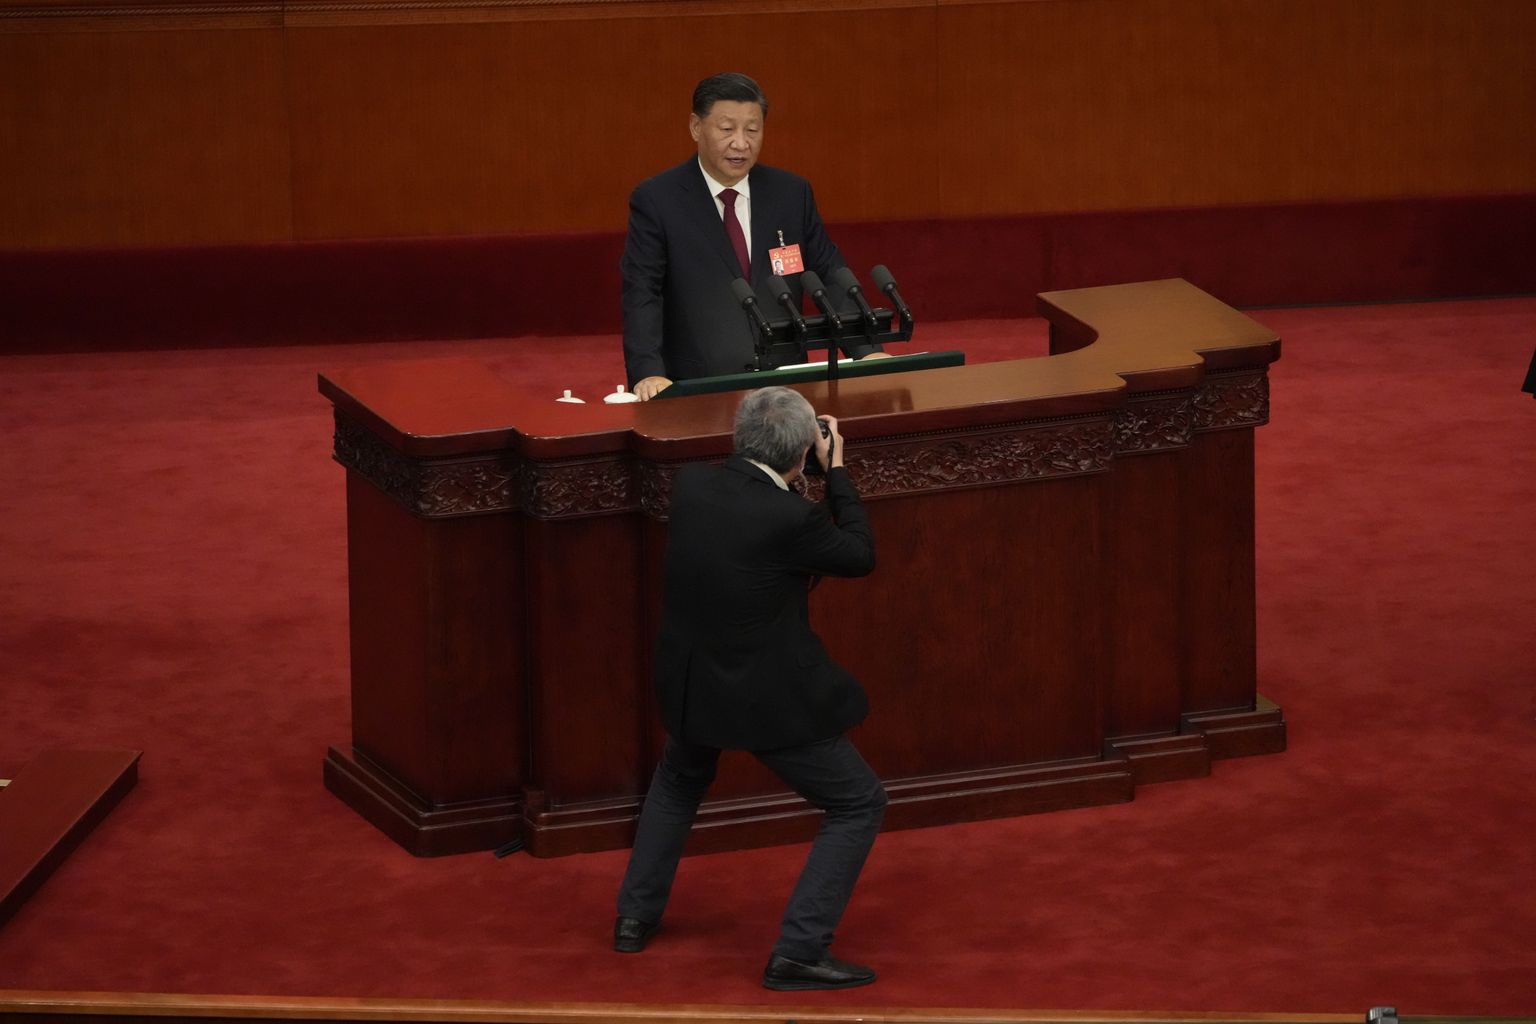 Fotograaf pildistamas Hiina liidrit Xi Jinpingi kompartei kongressi avamisel.